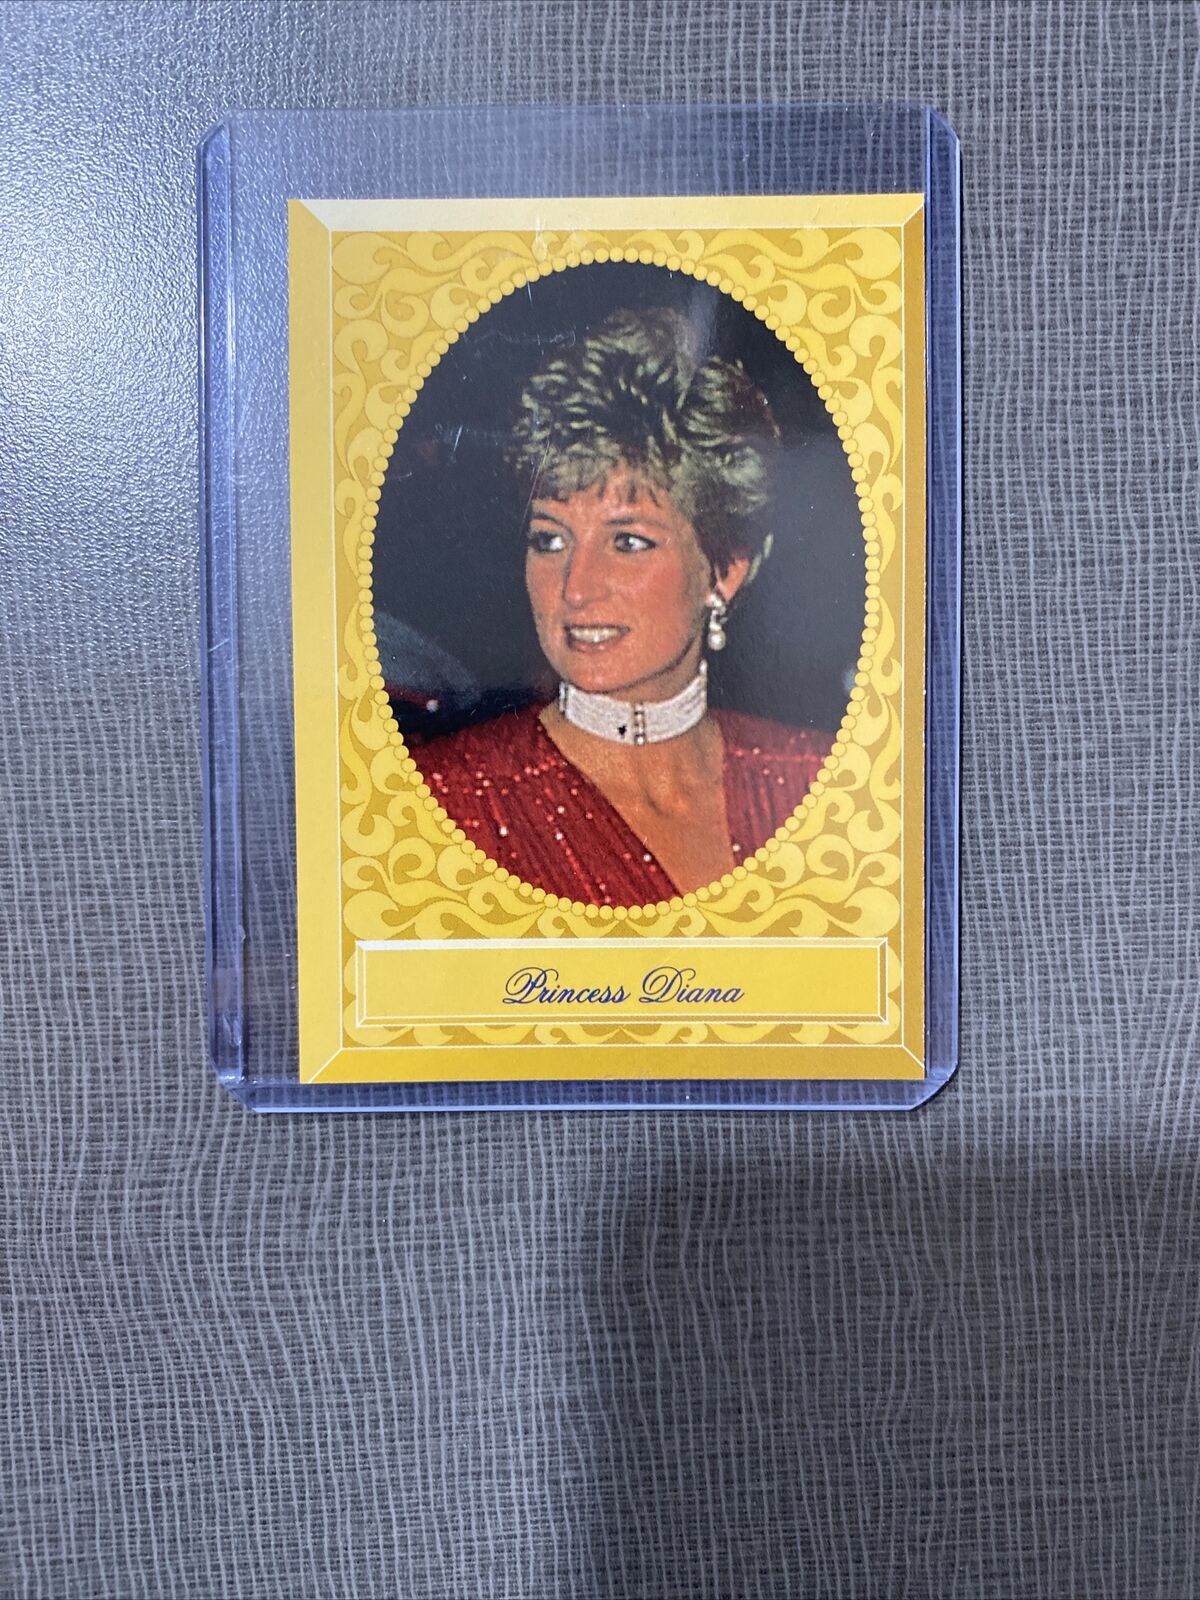 1993 Press Pass Royal Family Princess Diana Card.